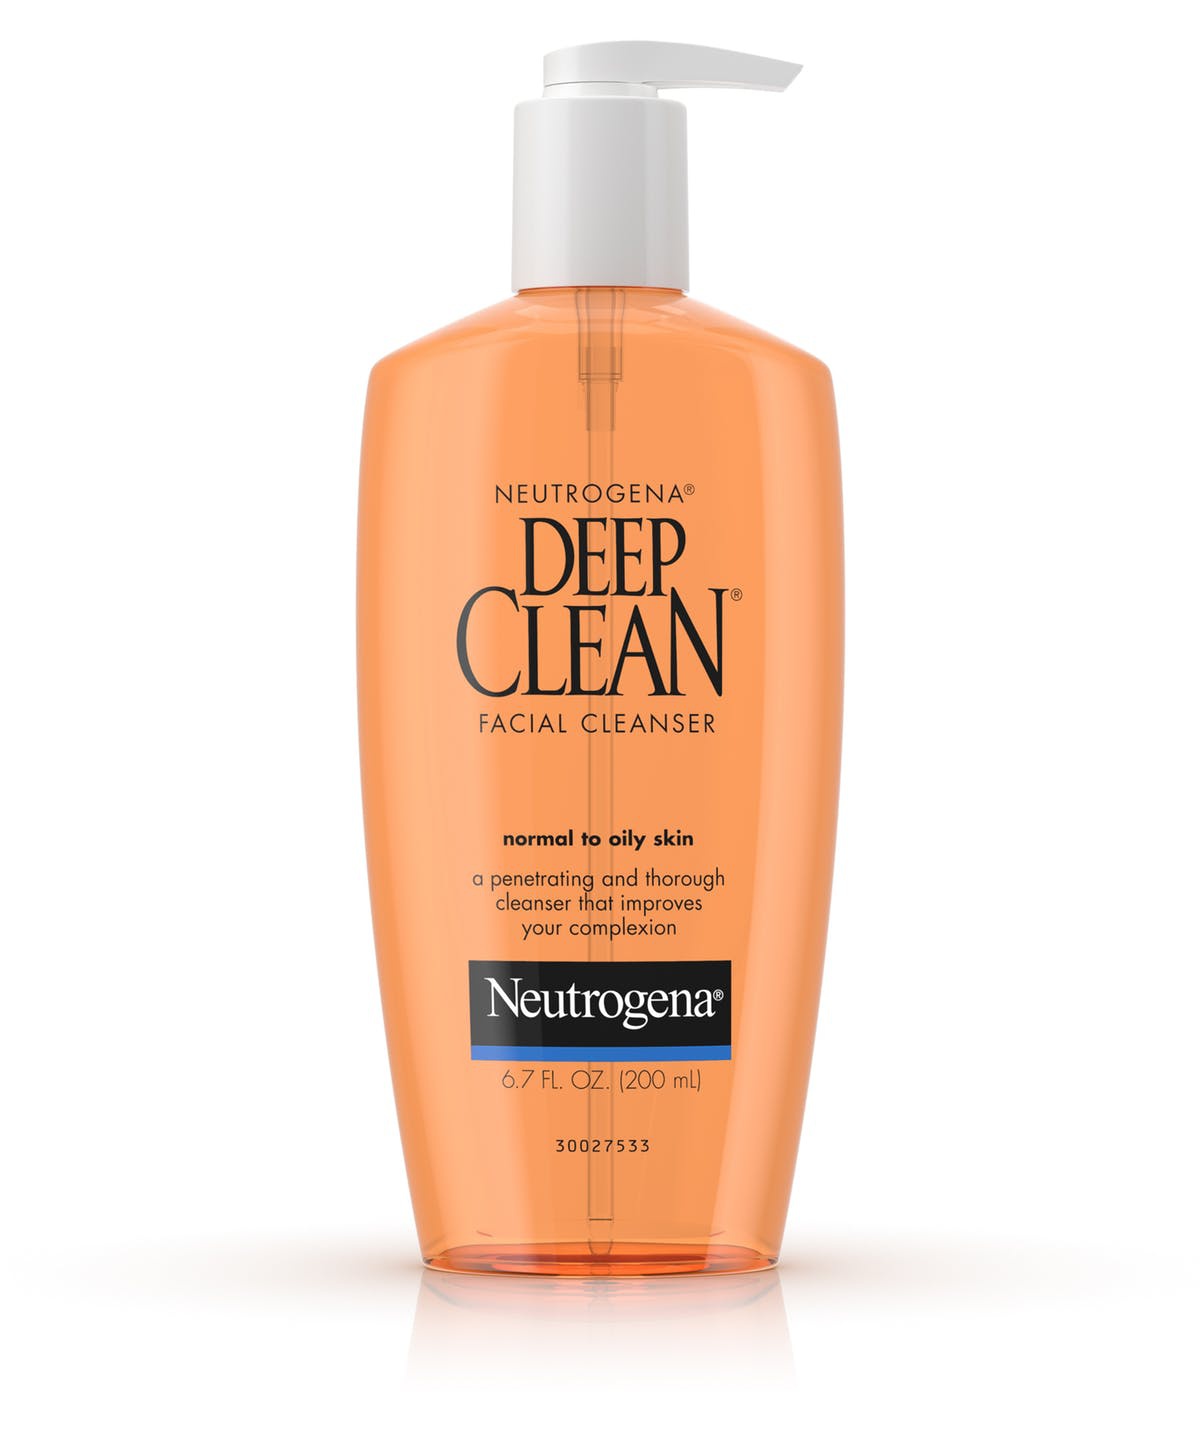 Neutrogena Deep Clean Facial Cleansing Gel